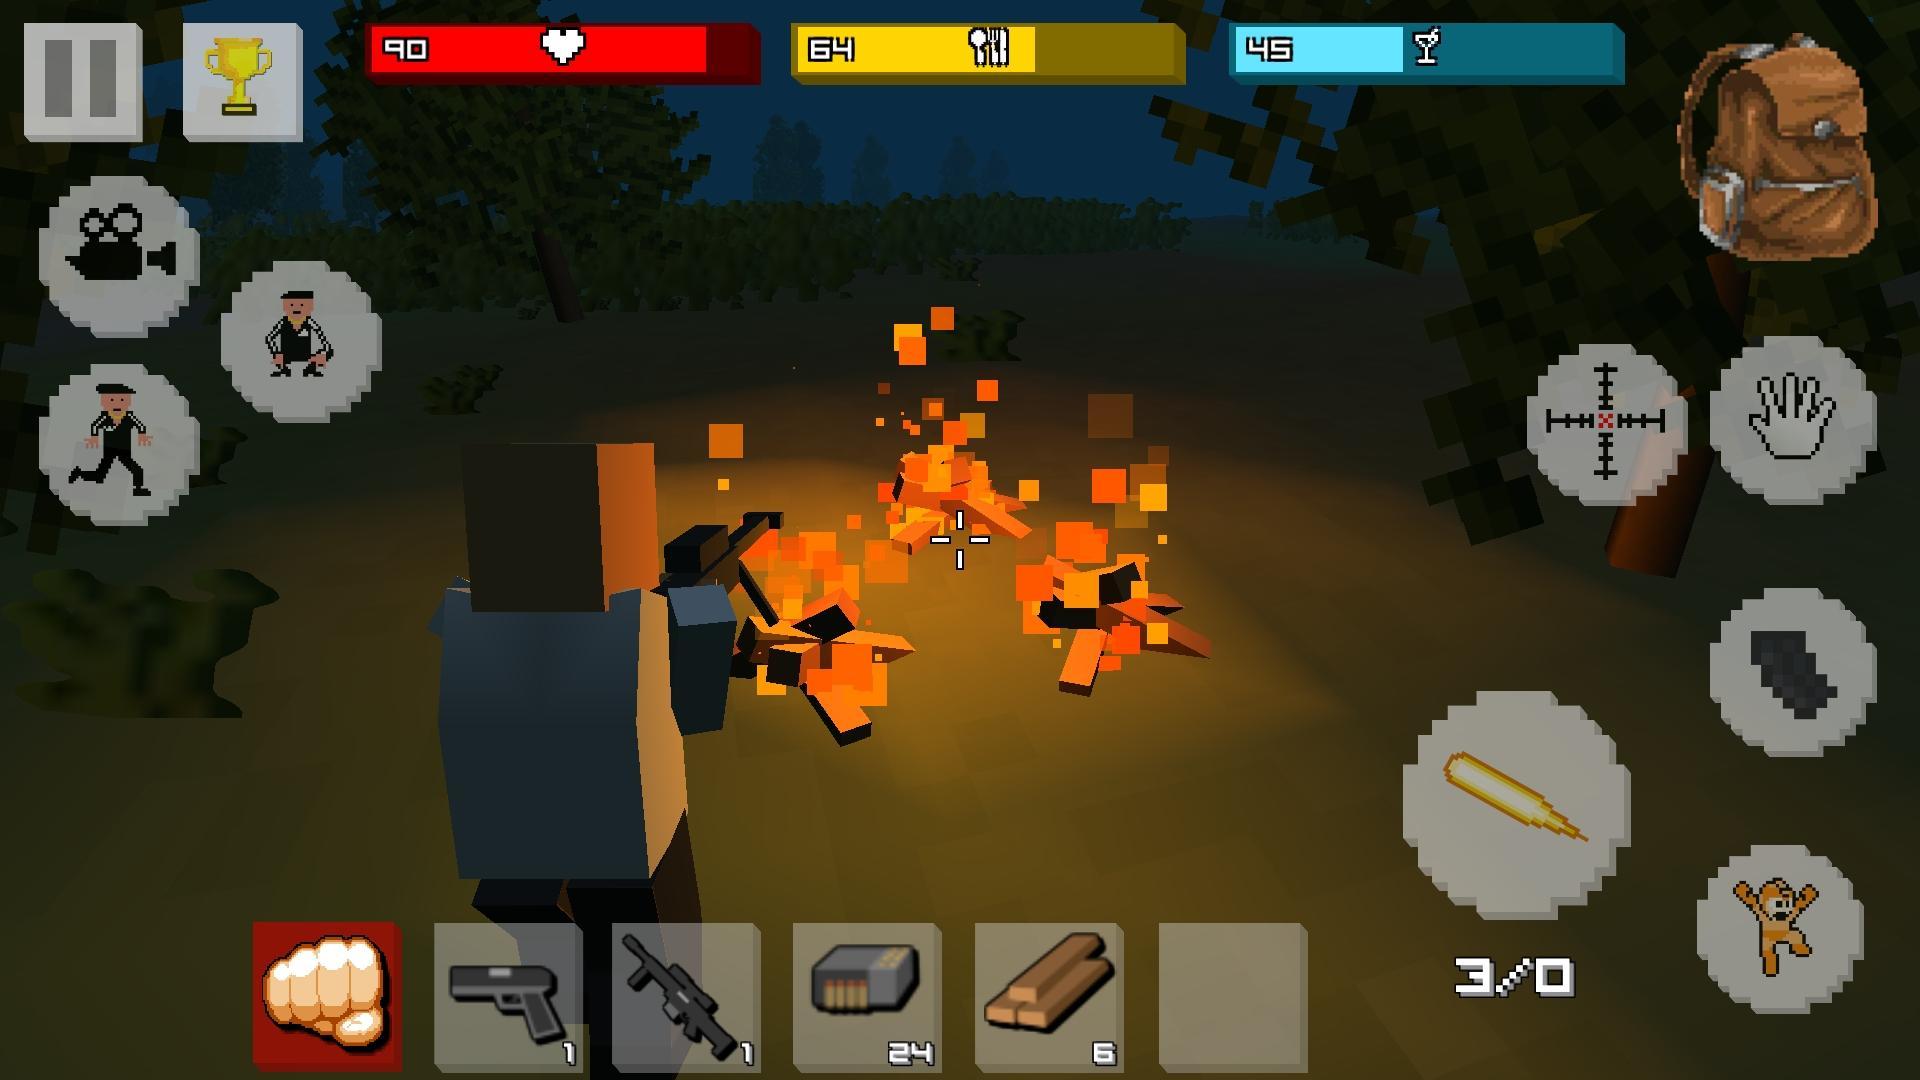 Zombie Craft Survival 3d Juego De Disparos For Android - can we survive zombie apocalypse roblox zombie